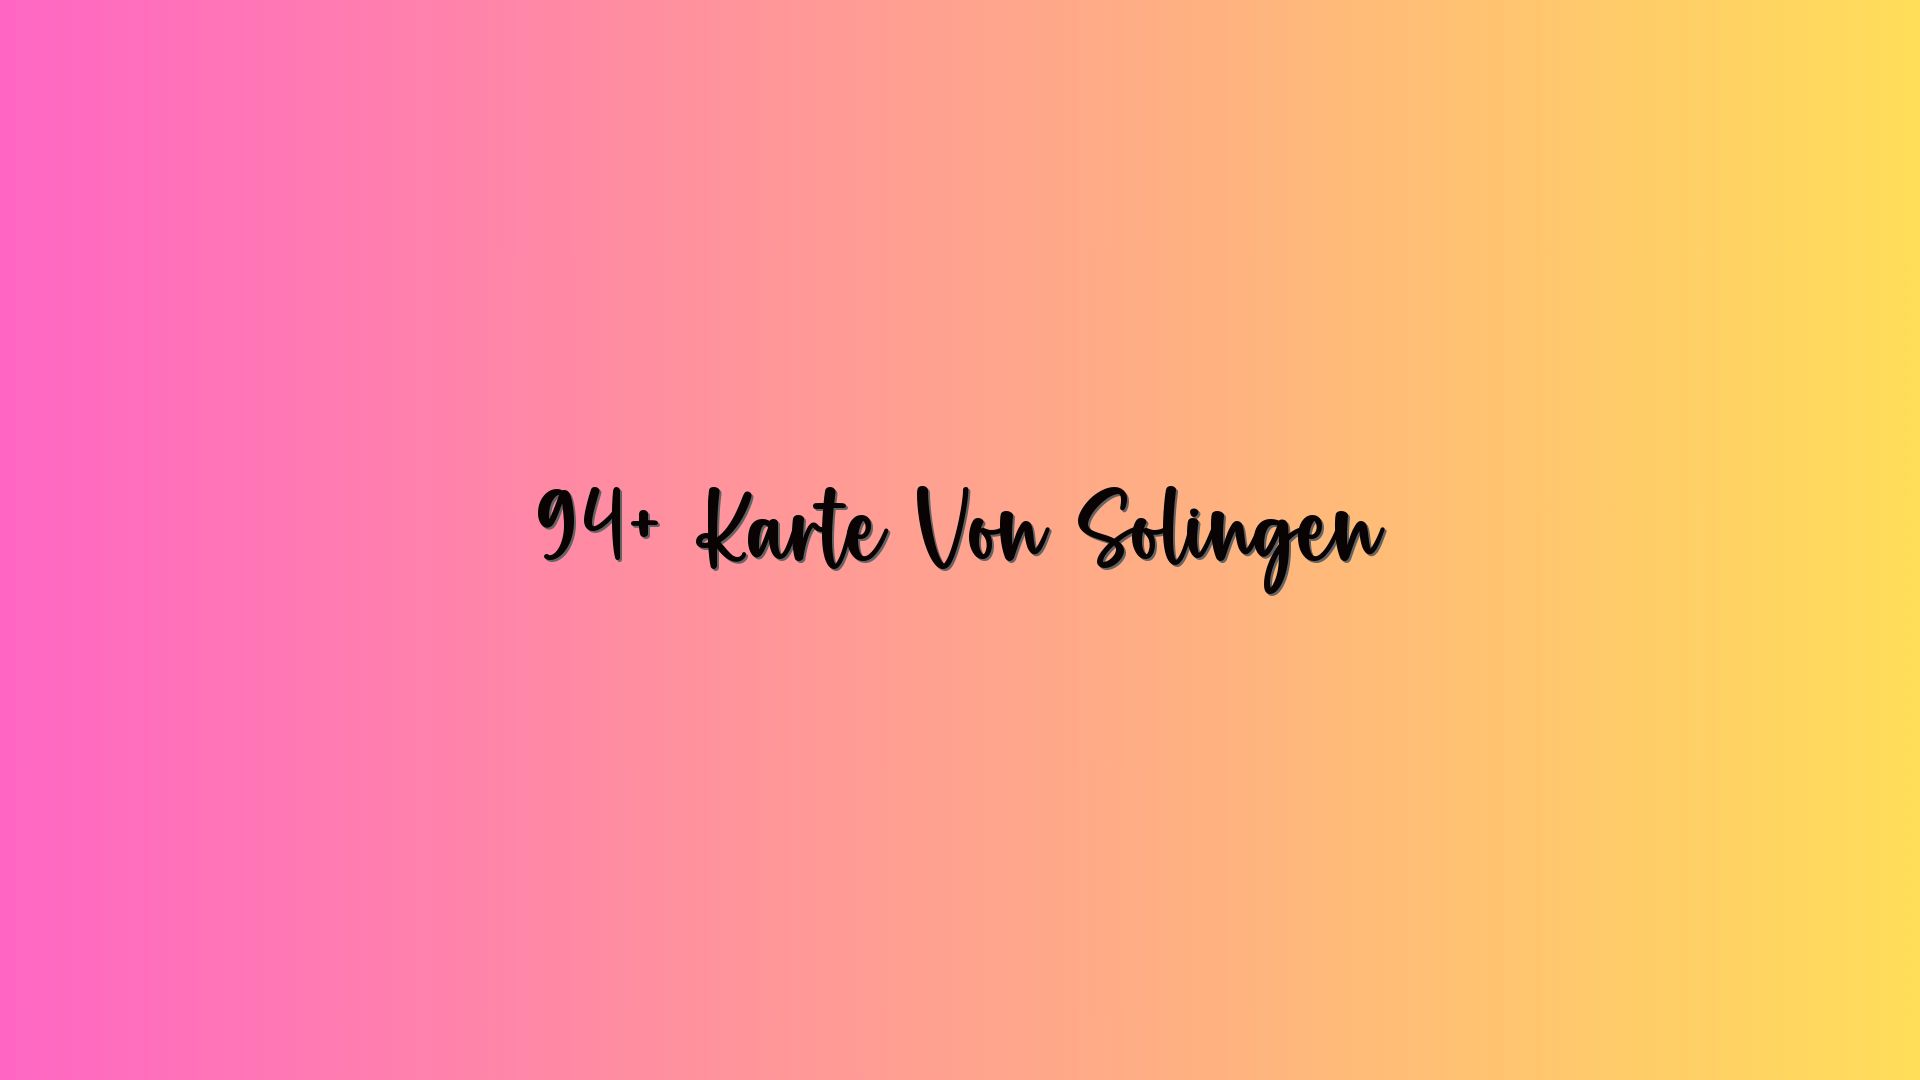 94+ Karte Von Solingen